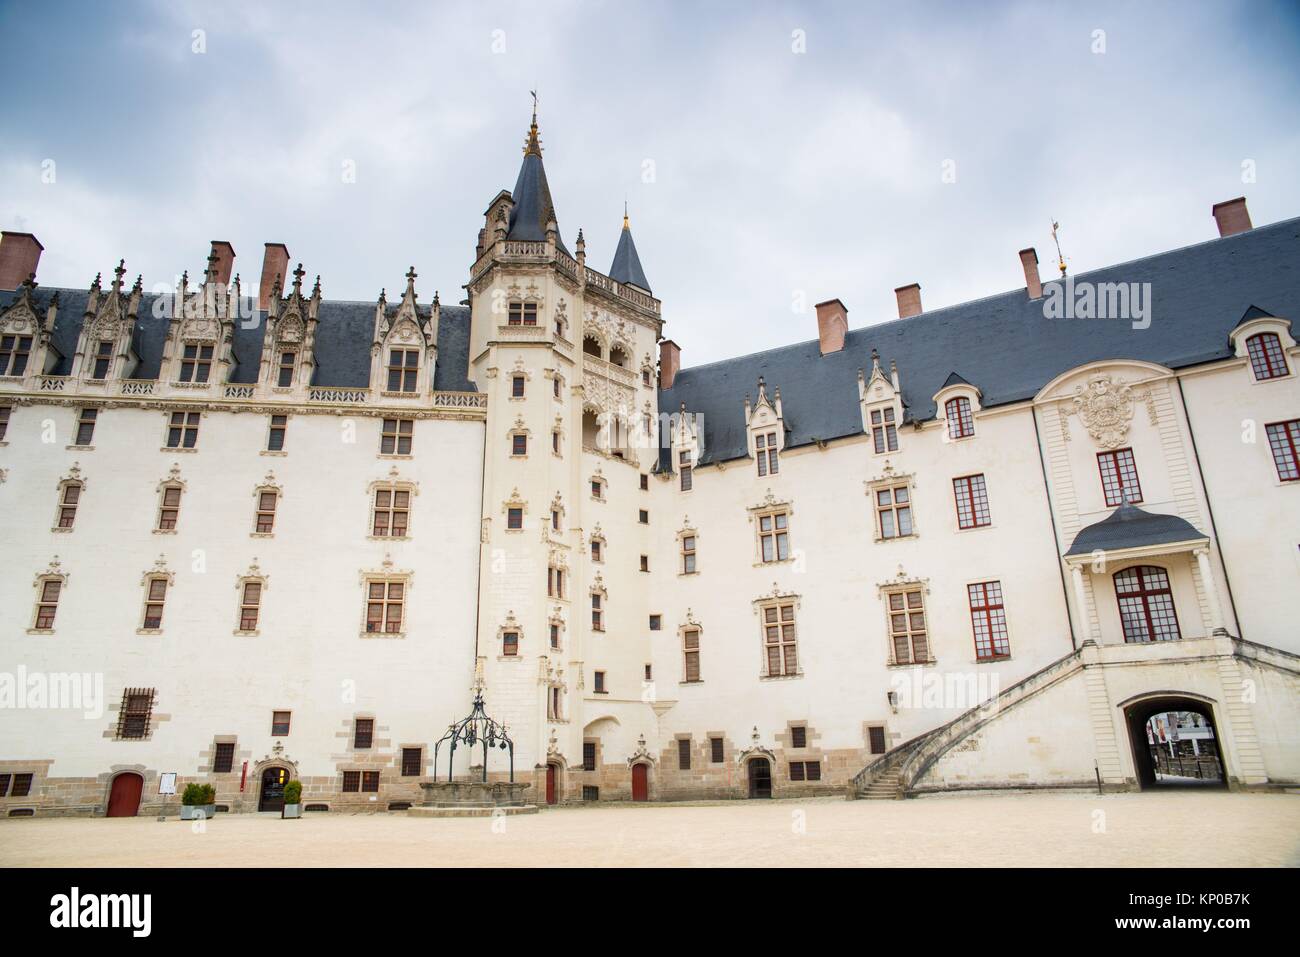 El castillo de los Duques de Bretaña es una antigua fortaleza medieval y palacio ducal situado en la ciudad de Nantes, en la región francesa de Stock Photo